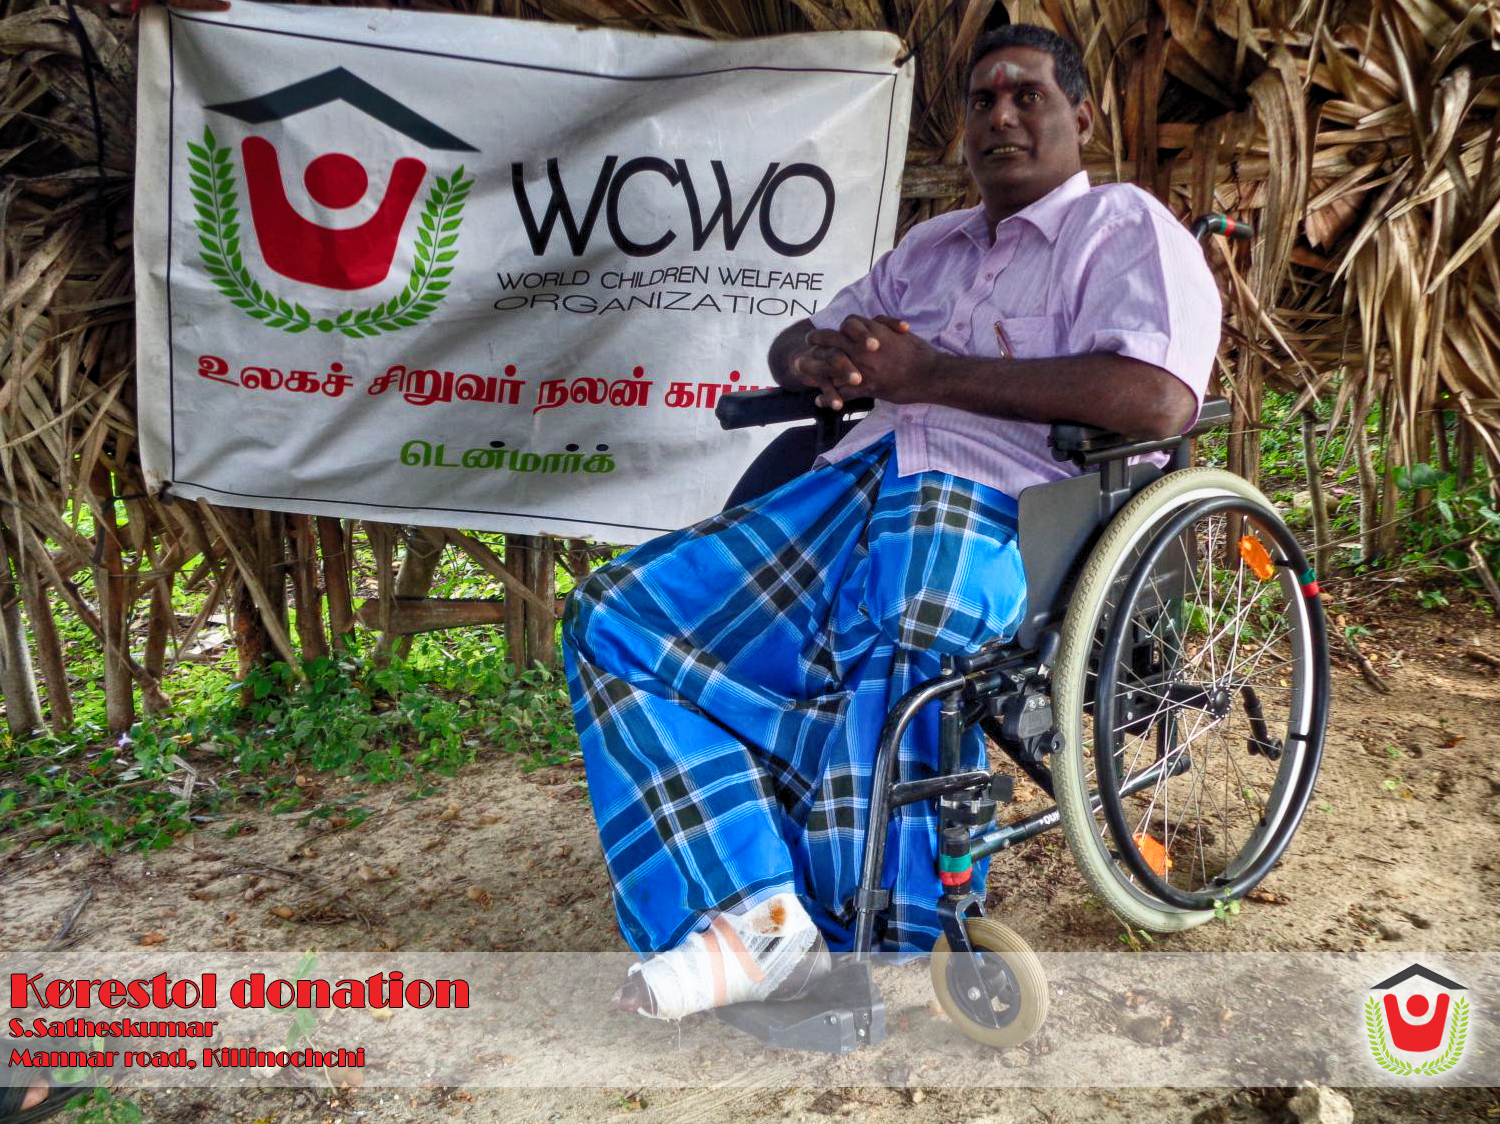 kørestole donation (4)